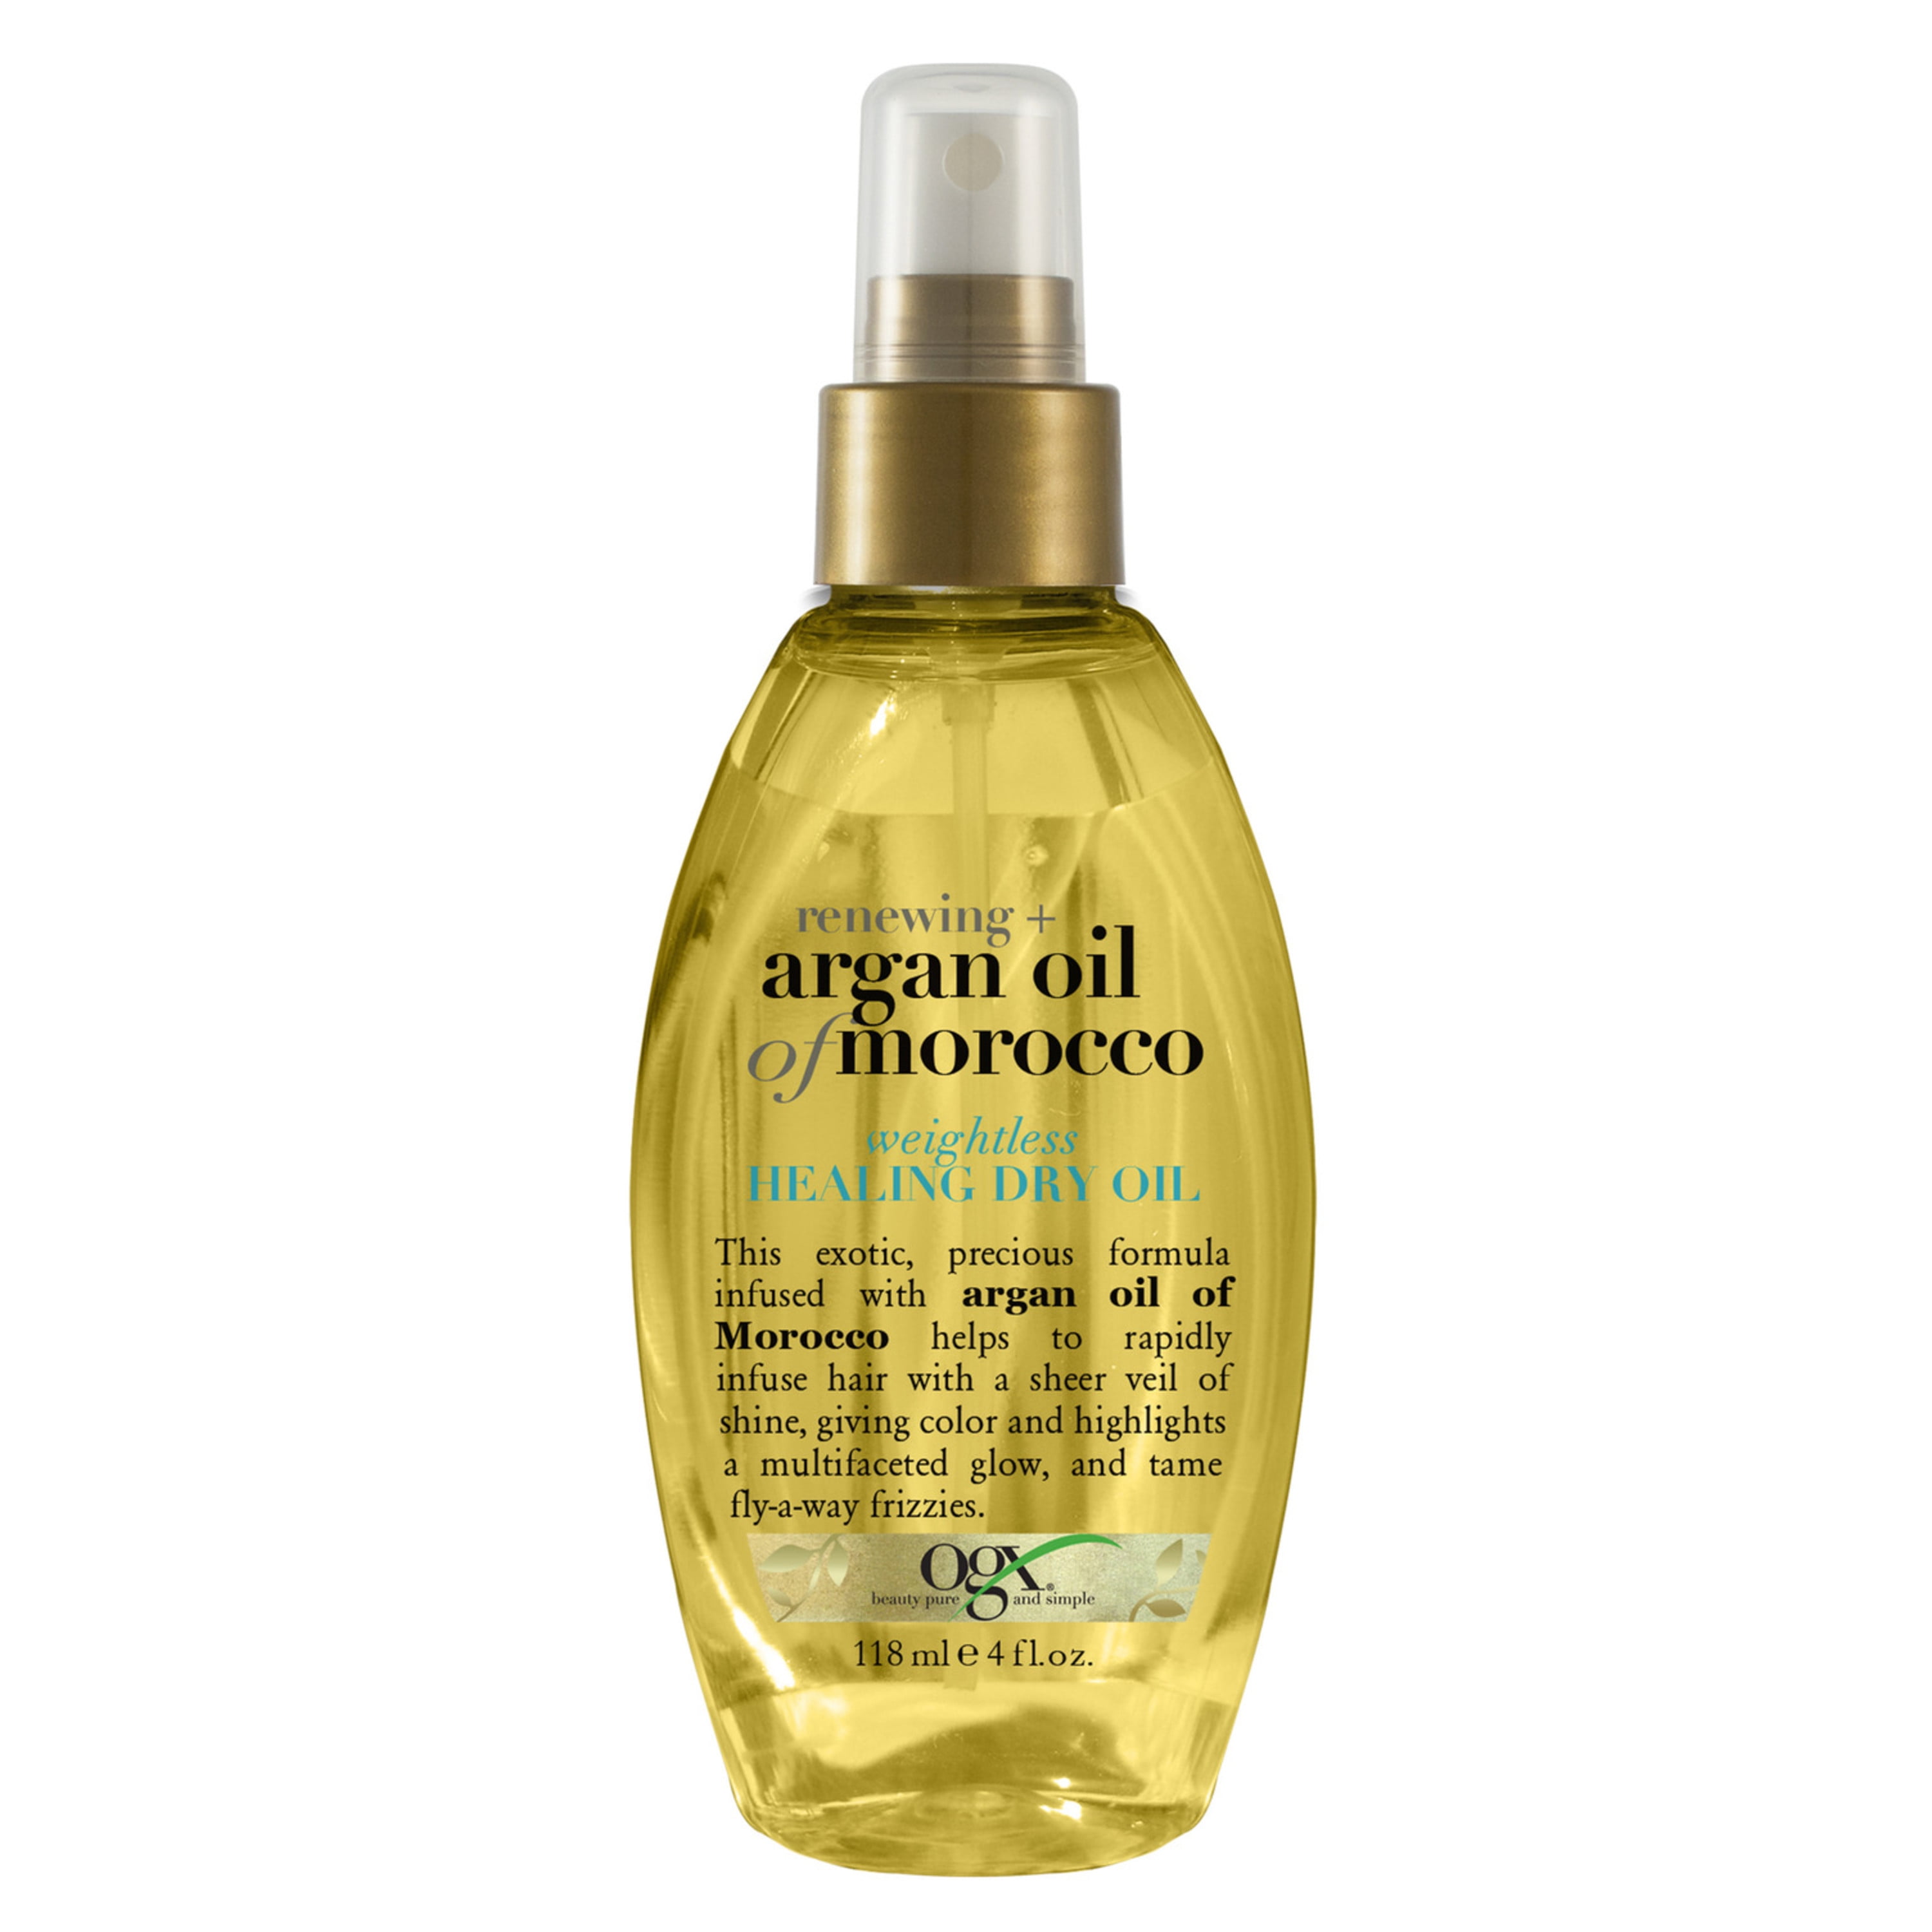 Масло спрей для волос отзывы. OGX Renewing+ Argan Oil of Morocco Weightless reviving Dry Oil 118ml. OGX масло спрей Марокко для восстановления волос 118 мл. Масло для волос OGX сухое аргановое 118 мл. Keratin Oil OGX масло спрей.